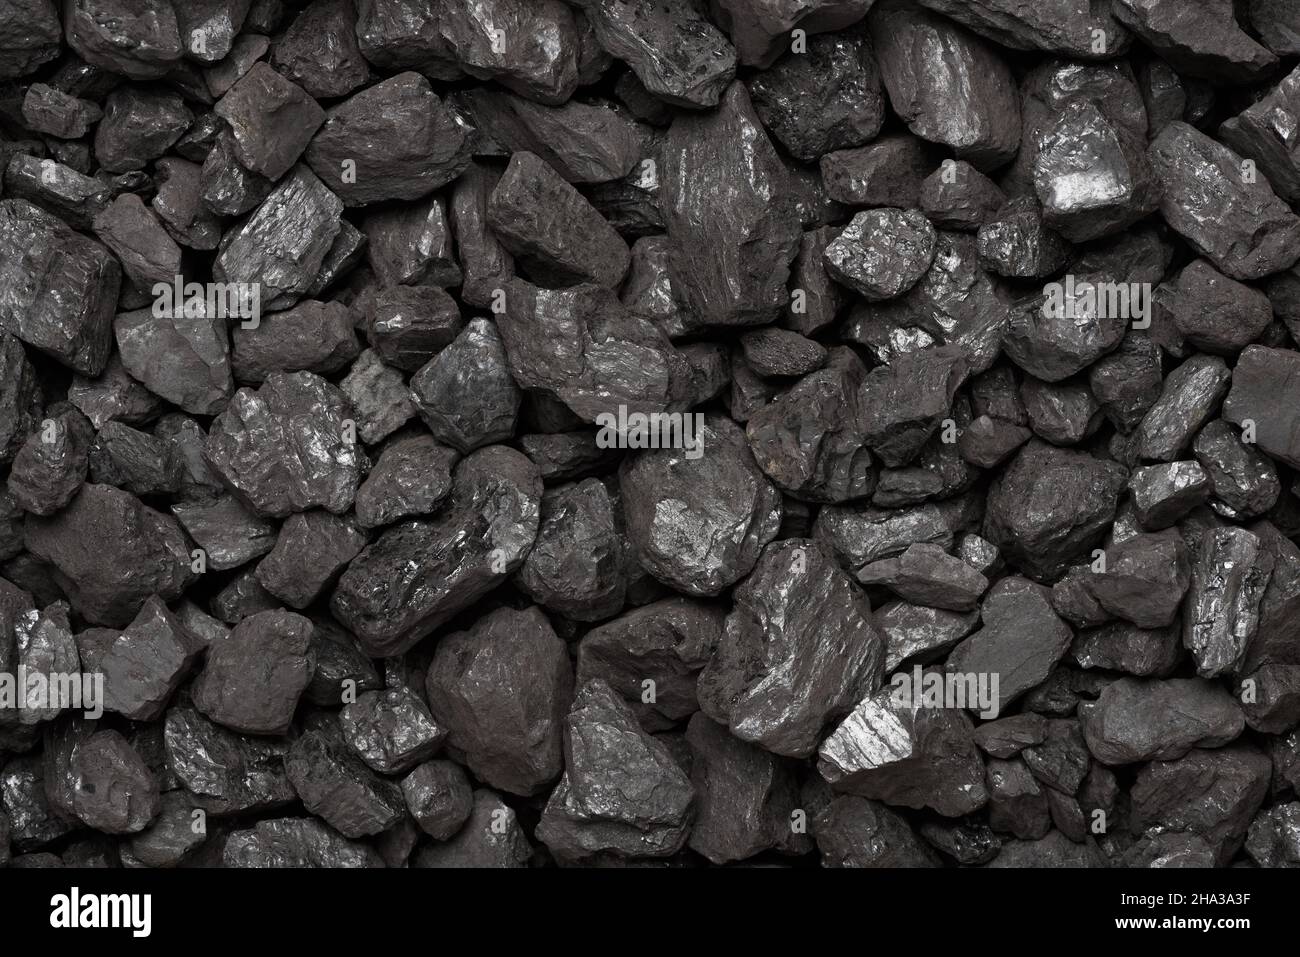 Vue de dessus texture charbon.Fond noir naturel en pierre de charbon. Banque D'Images